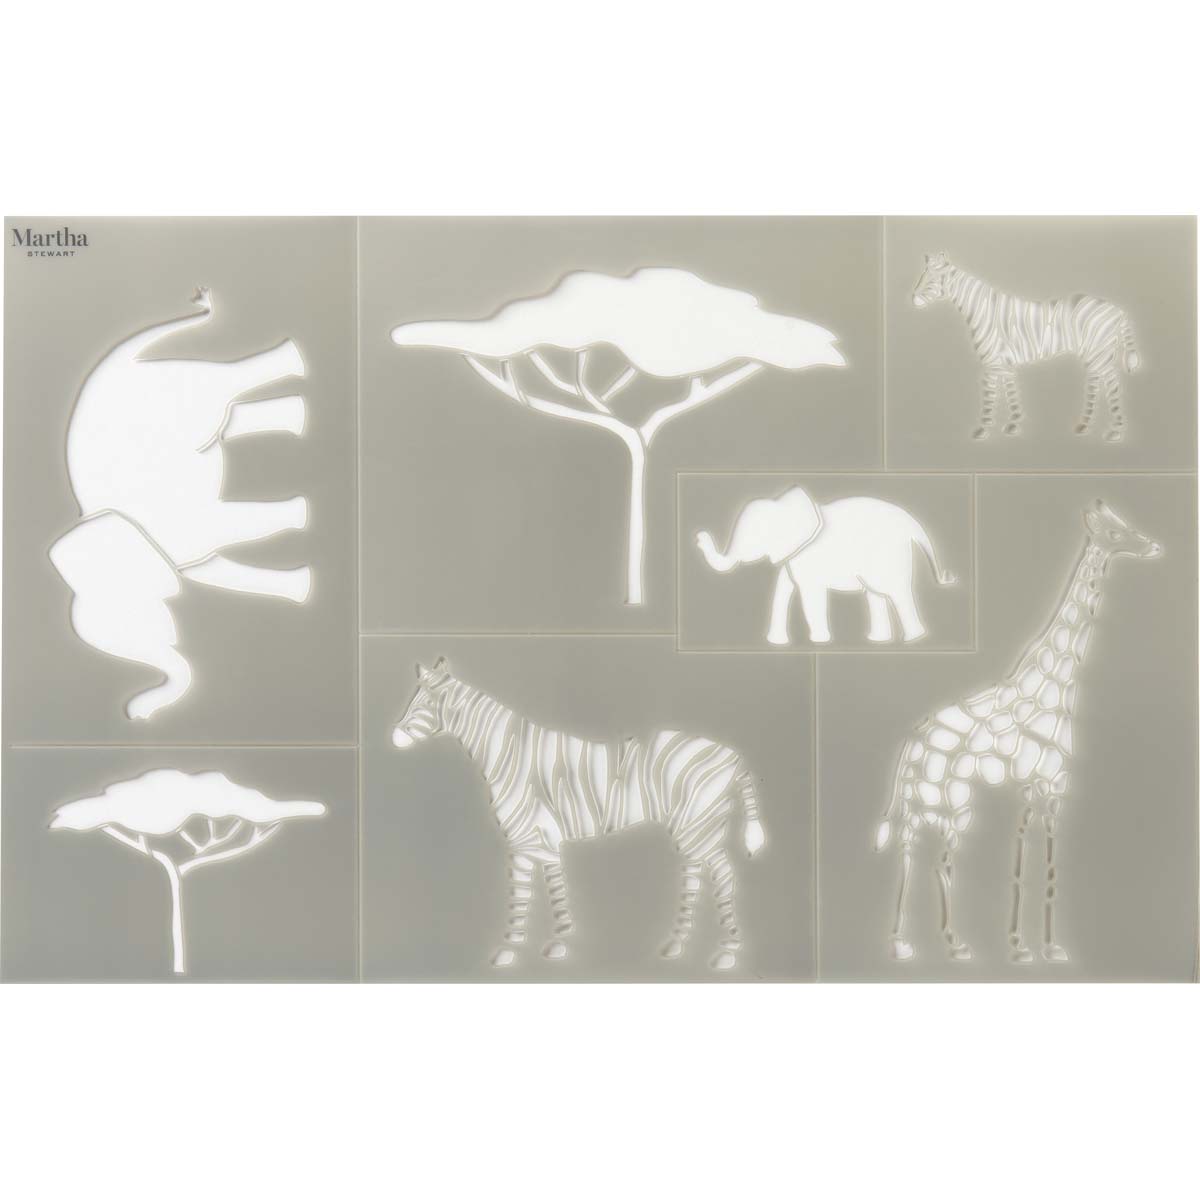 Martha Stewart ® Adhesive Stencil - Safari - 17644